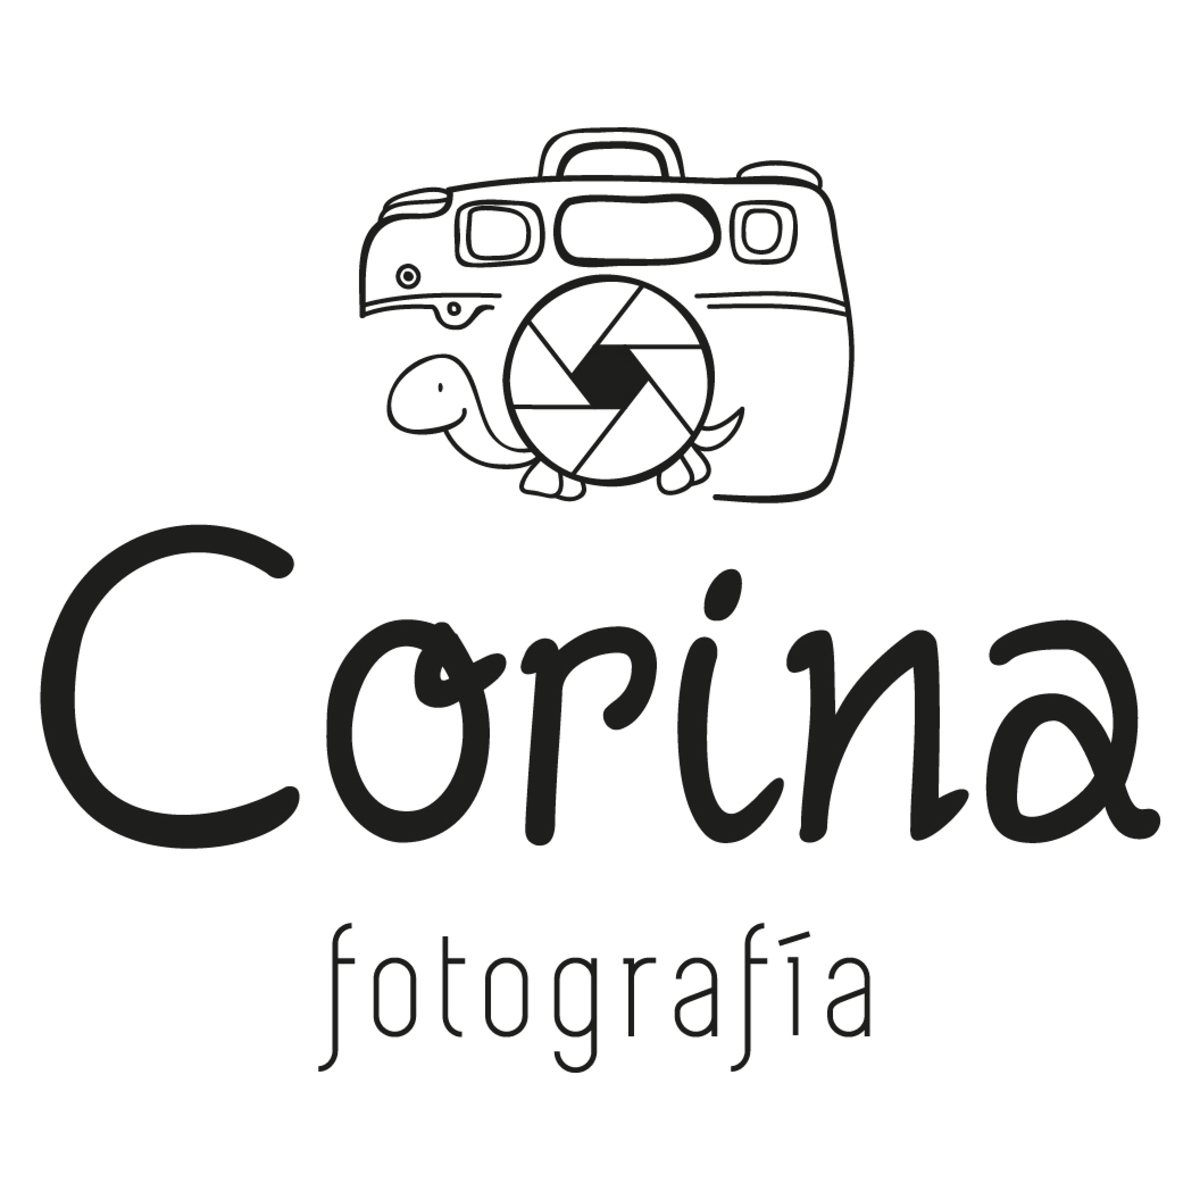 identidad-corina-fotograf-a-domestika